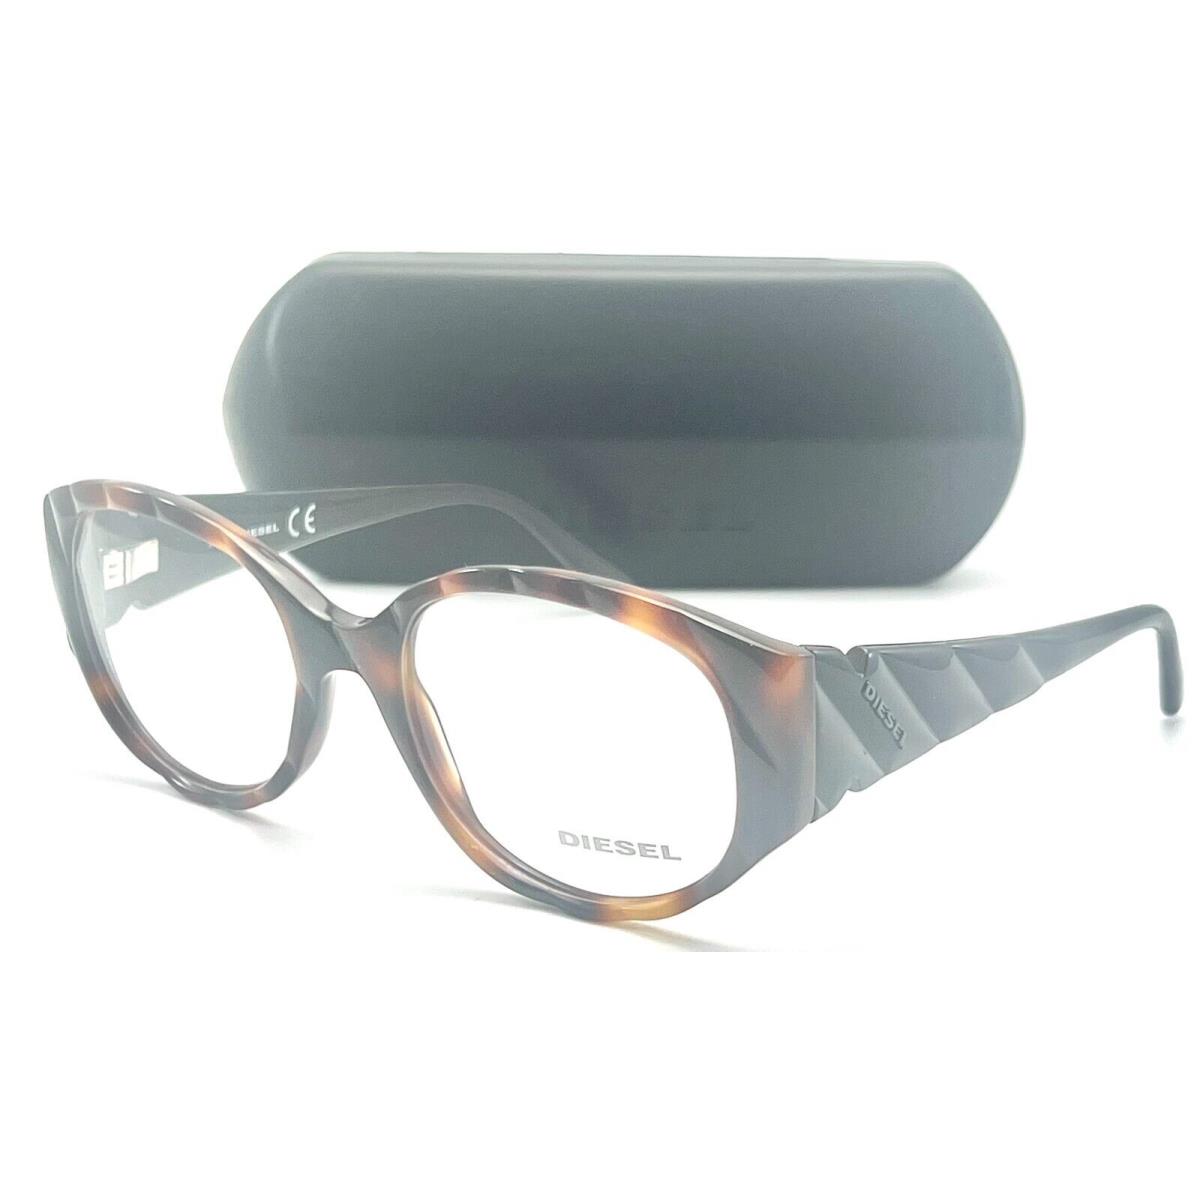 Diesel DL5007 052 Dark Havana Eyeglasses 53-19 140 W/case